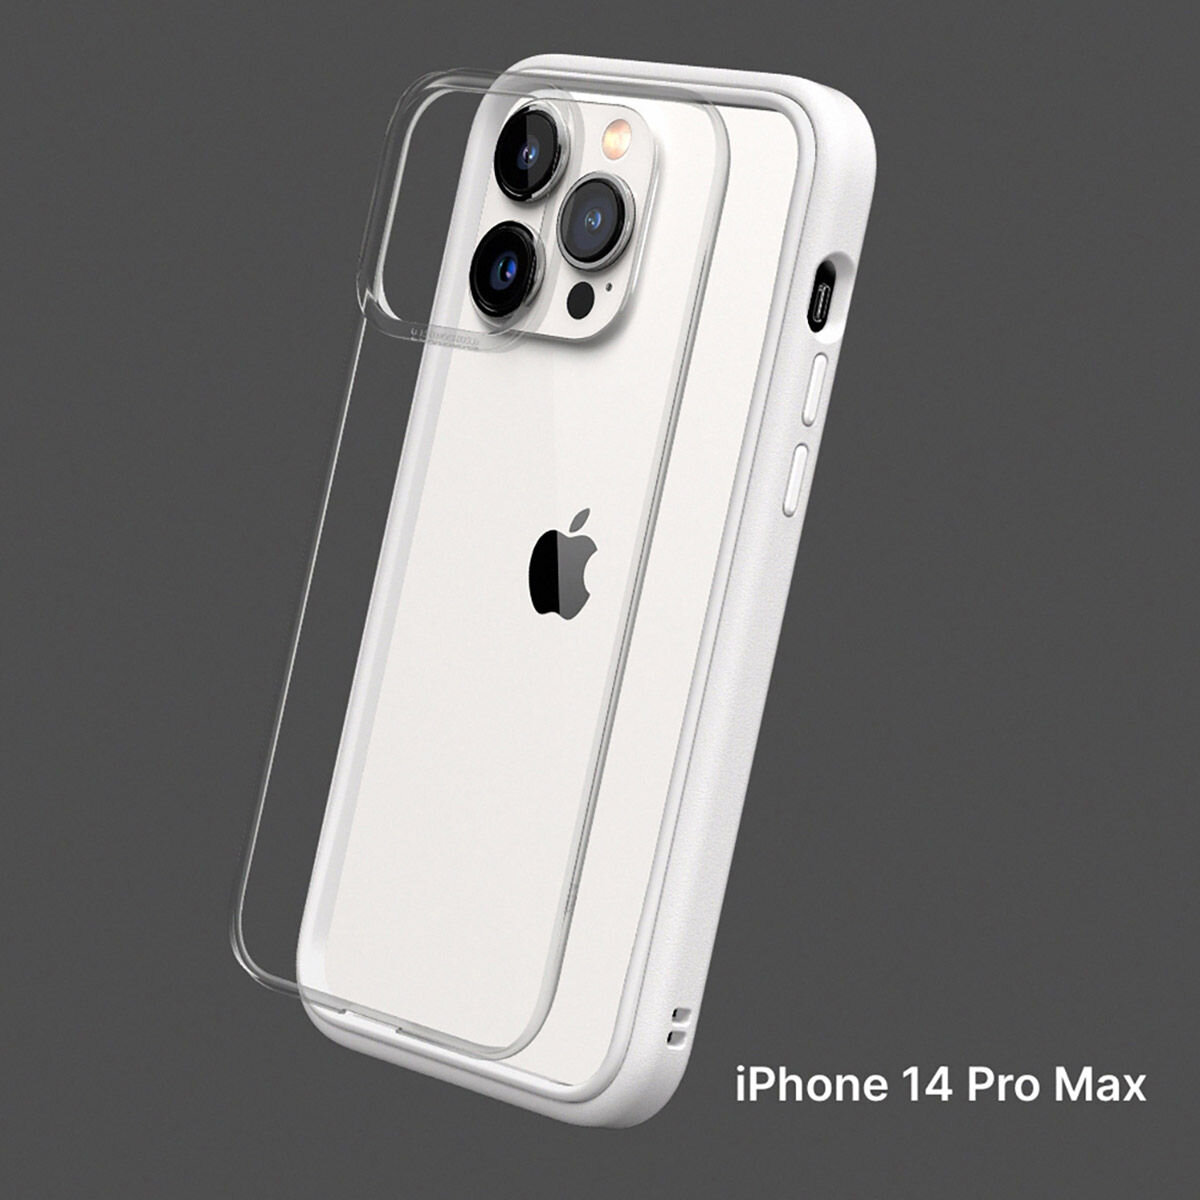 犀牛盾 iPhone 14 Pro Max MOD NX 防摔手機殼 + 9H 3D滿版螢幕玻璃保護貼 白